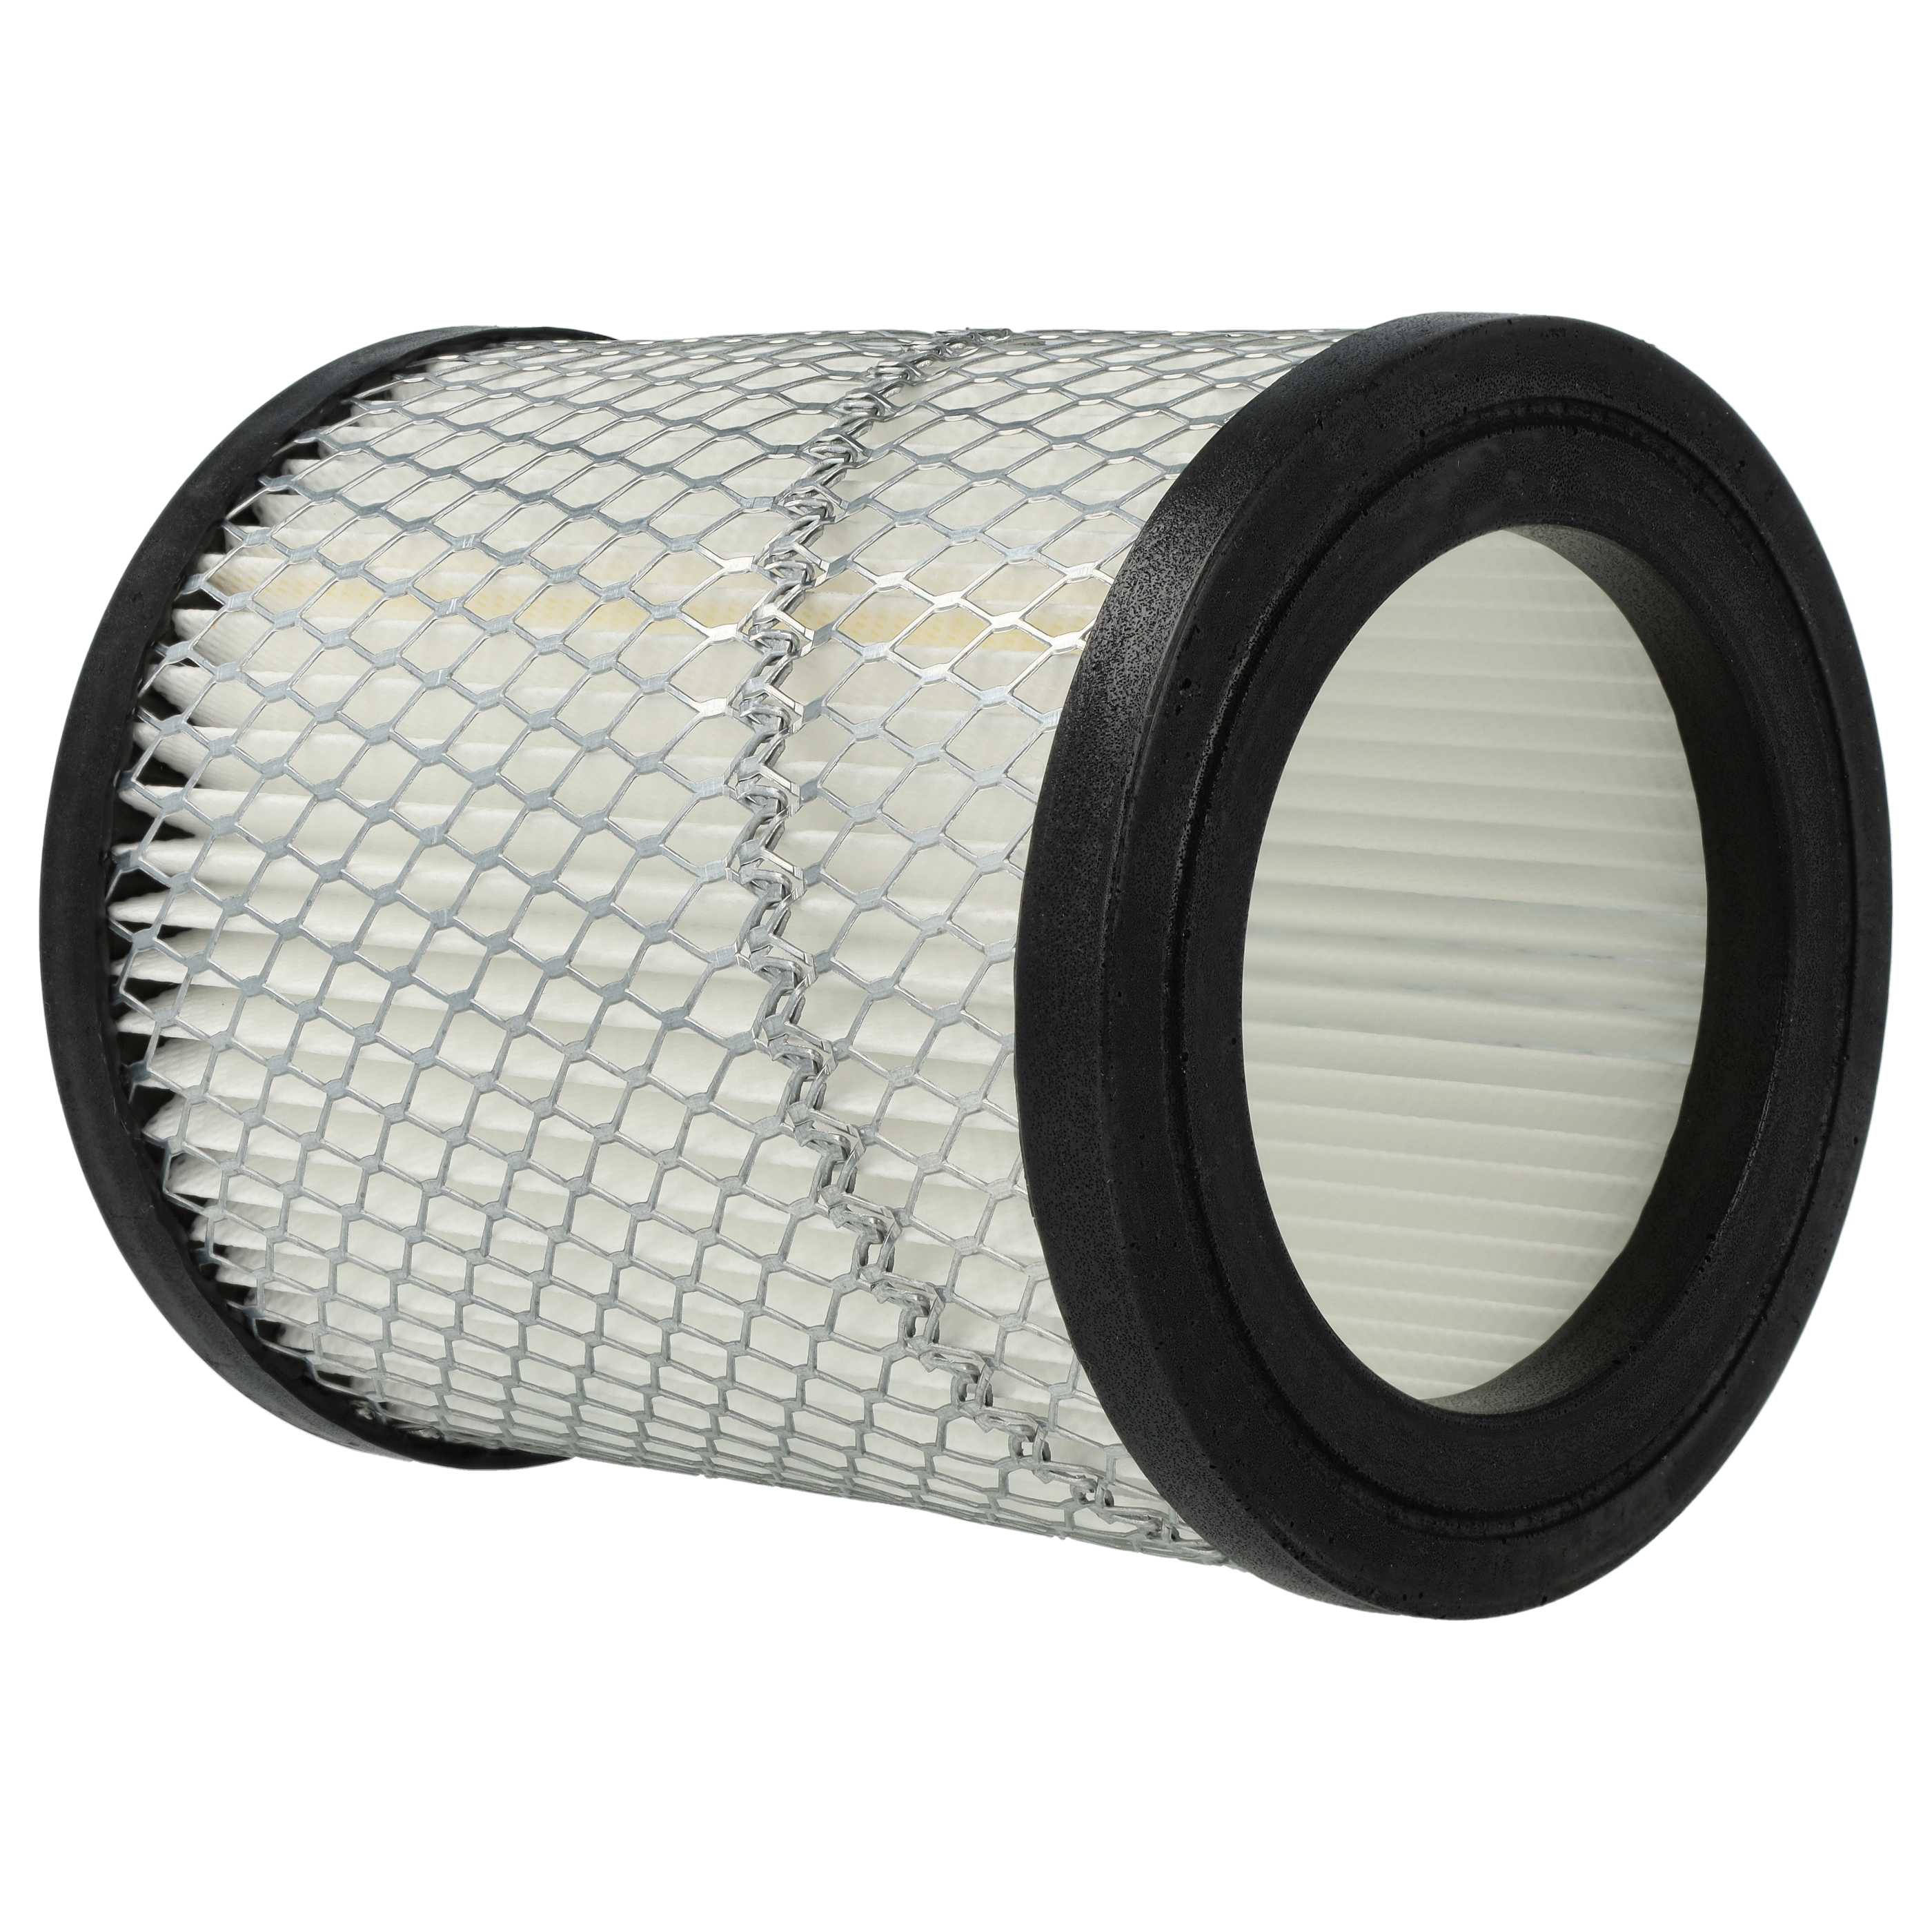 Filtro sostituisce Ruecab 003451 per aspiracenere - filtro HEPA, bianco / argento